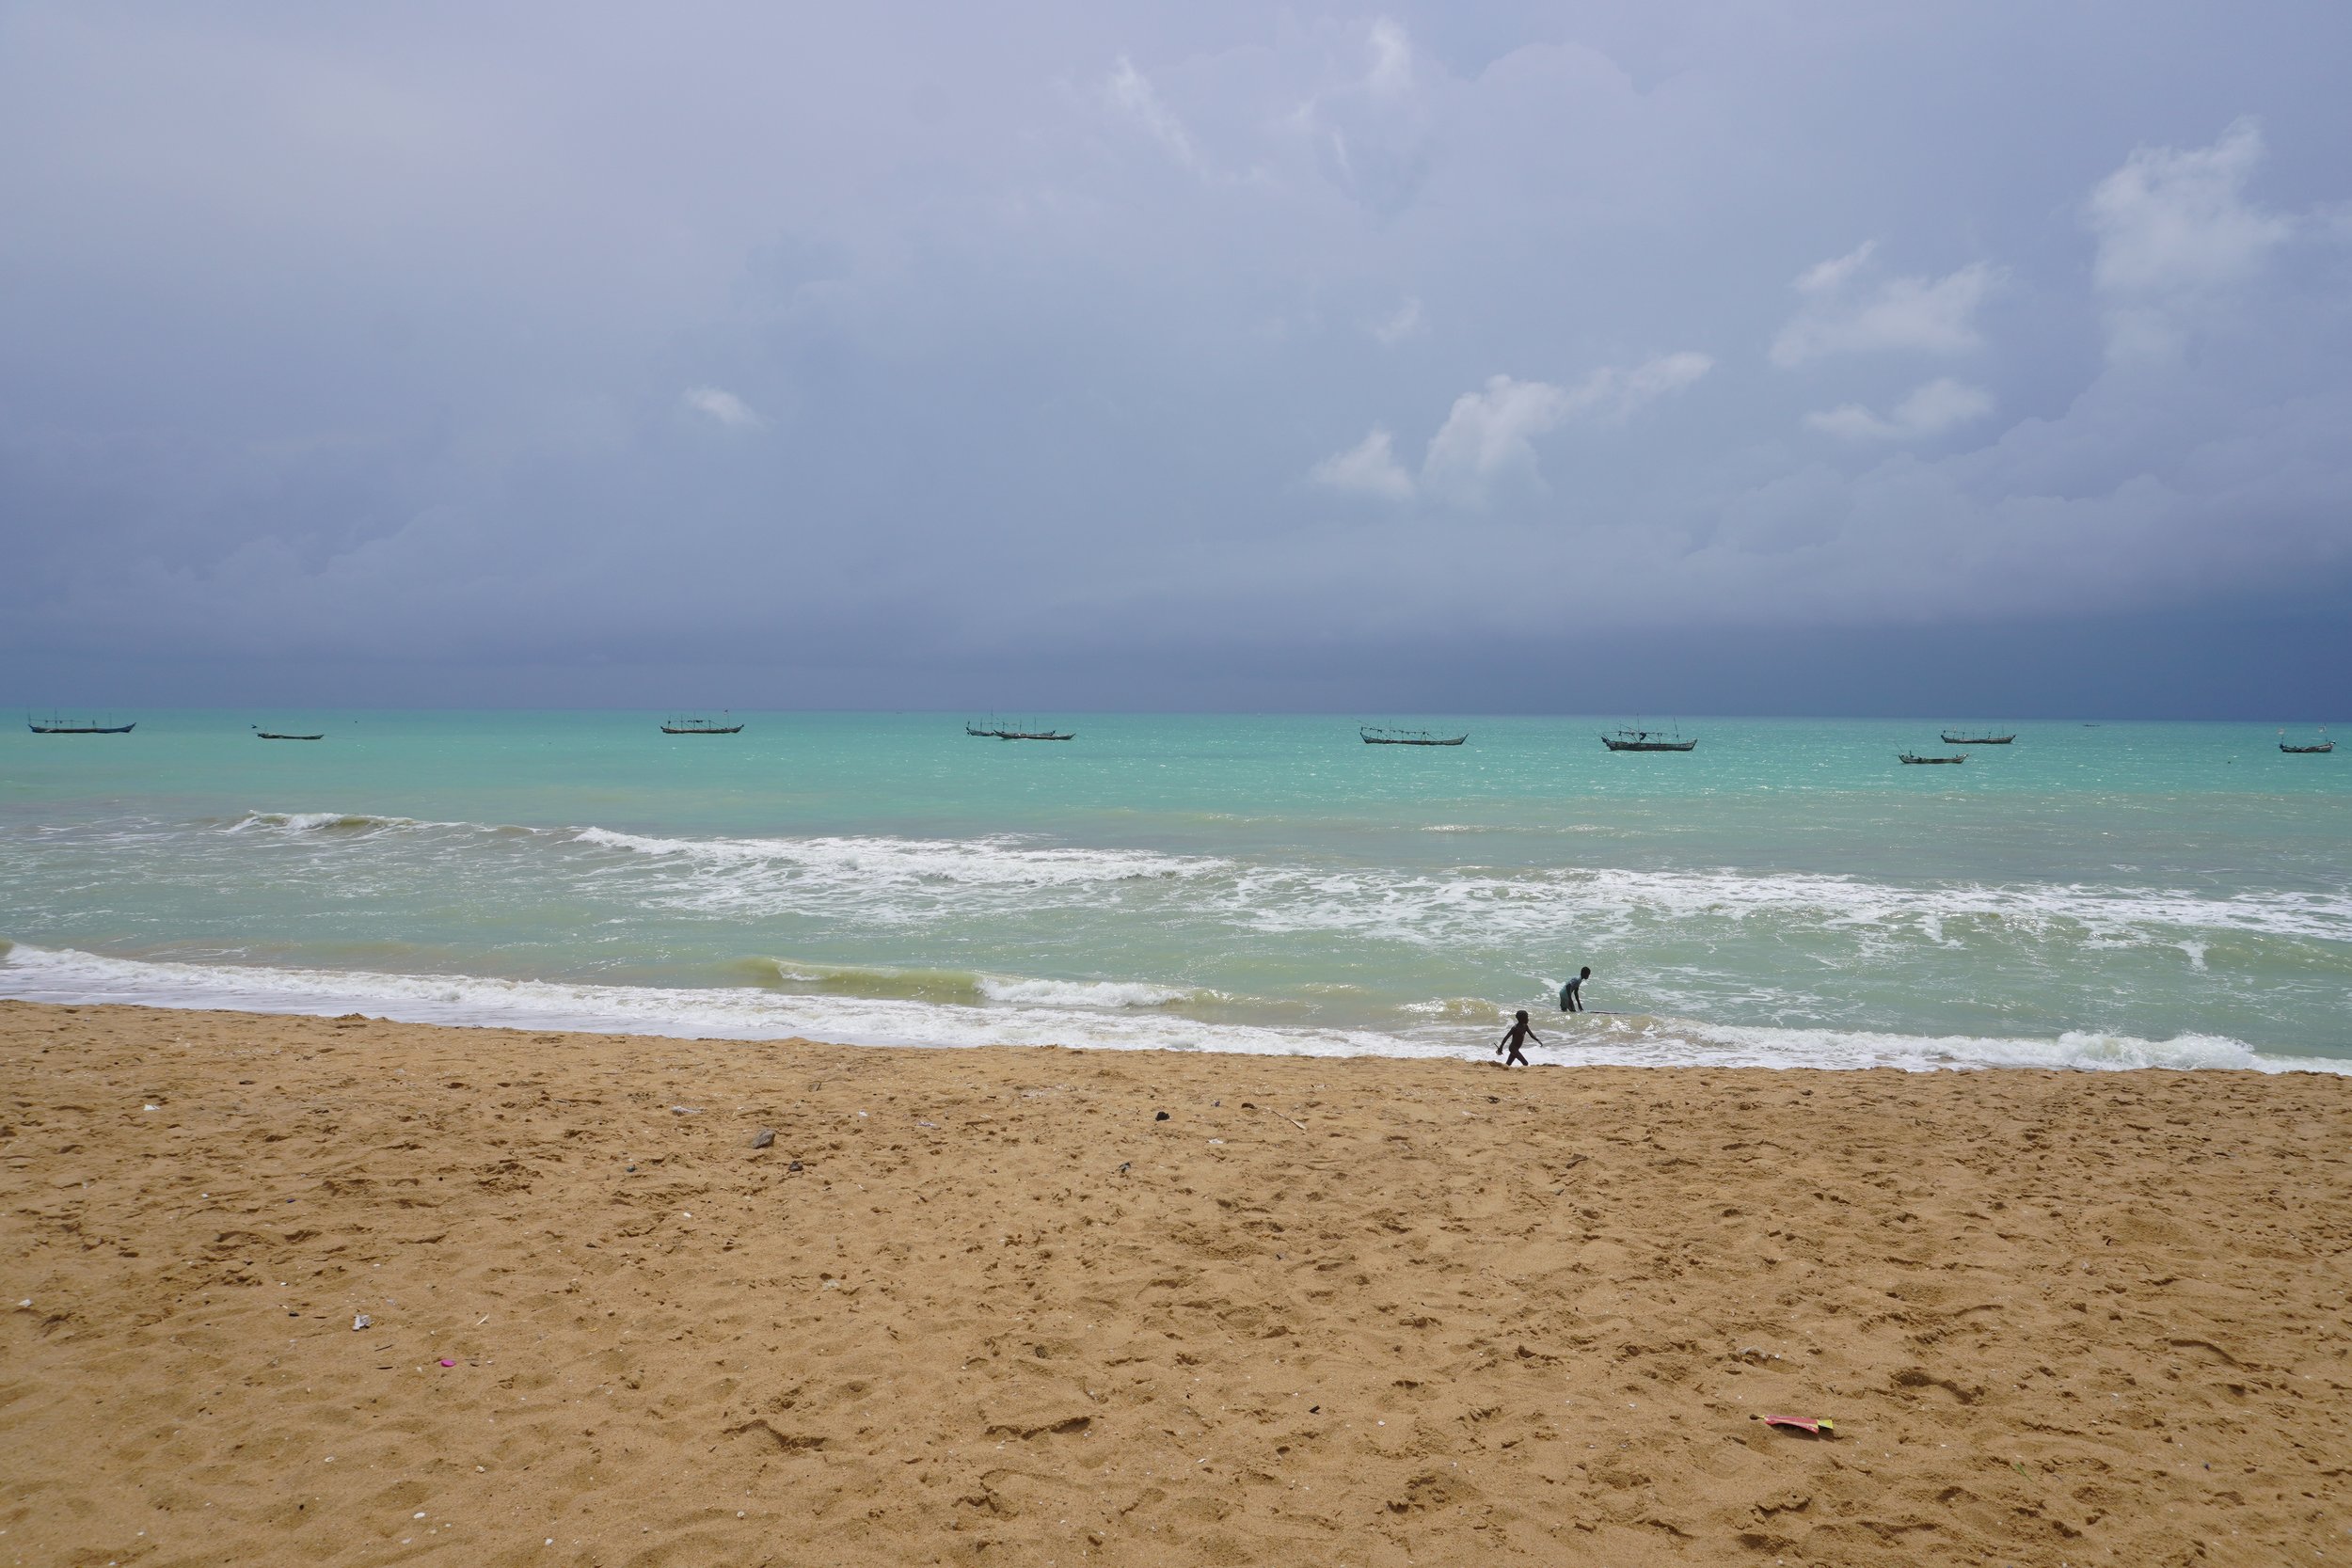  À Ayiguinnou, dans la commune de Grand-Popo, les pêcheurs pratiquent surtout la senne de plage (toute l’année, sauf durant le repos biologique en juillet), la senne tournante (selon l’état des courants et de la mer) et la pêche au filet dormant (d’a